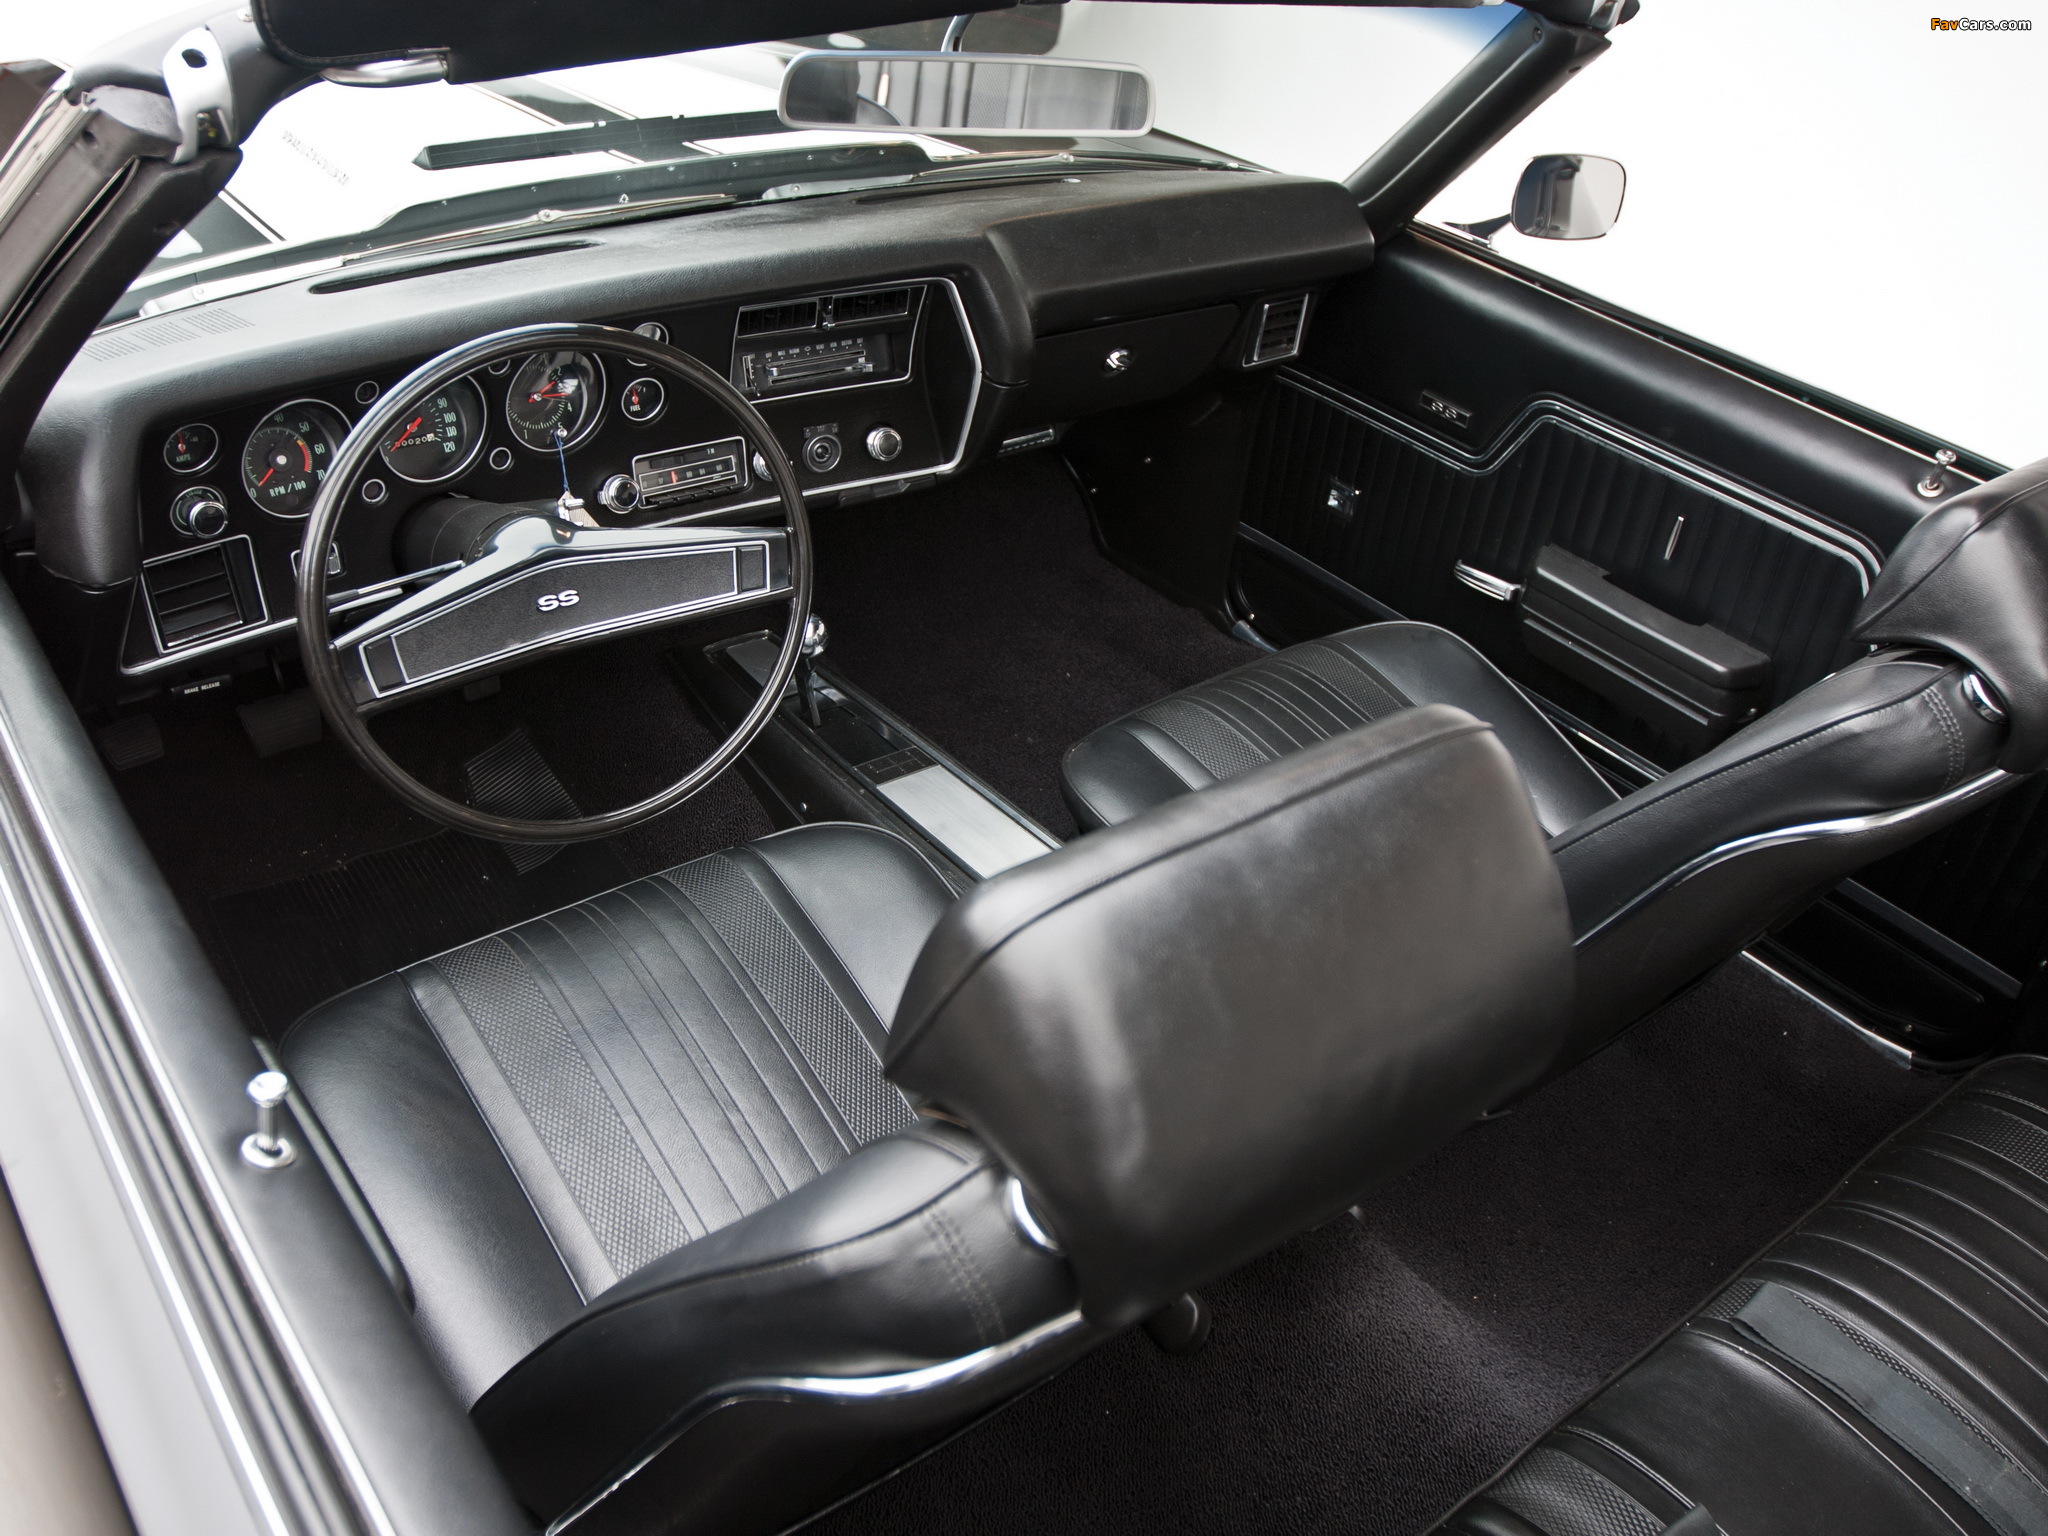 Chevrolet Chevelle SS 396 Hardtop Coupe 1970 photos (2048 x 1536)